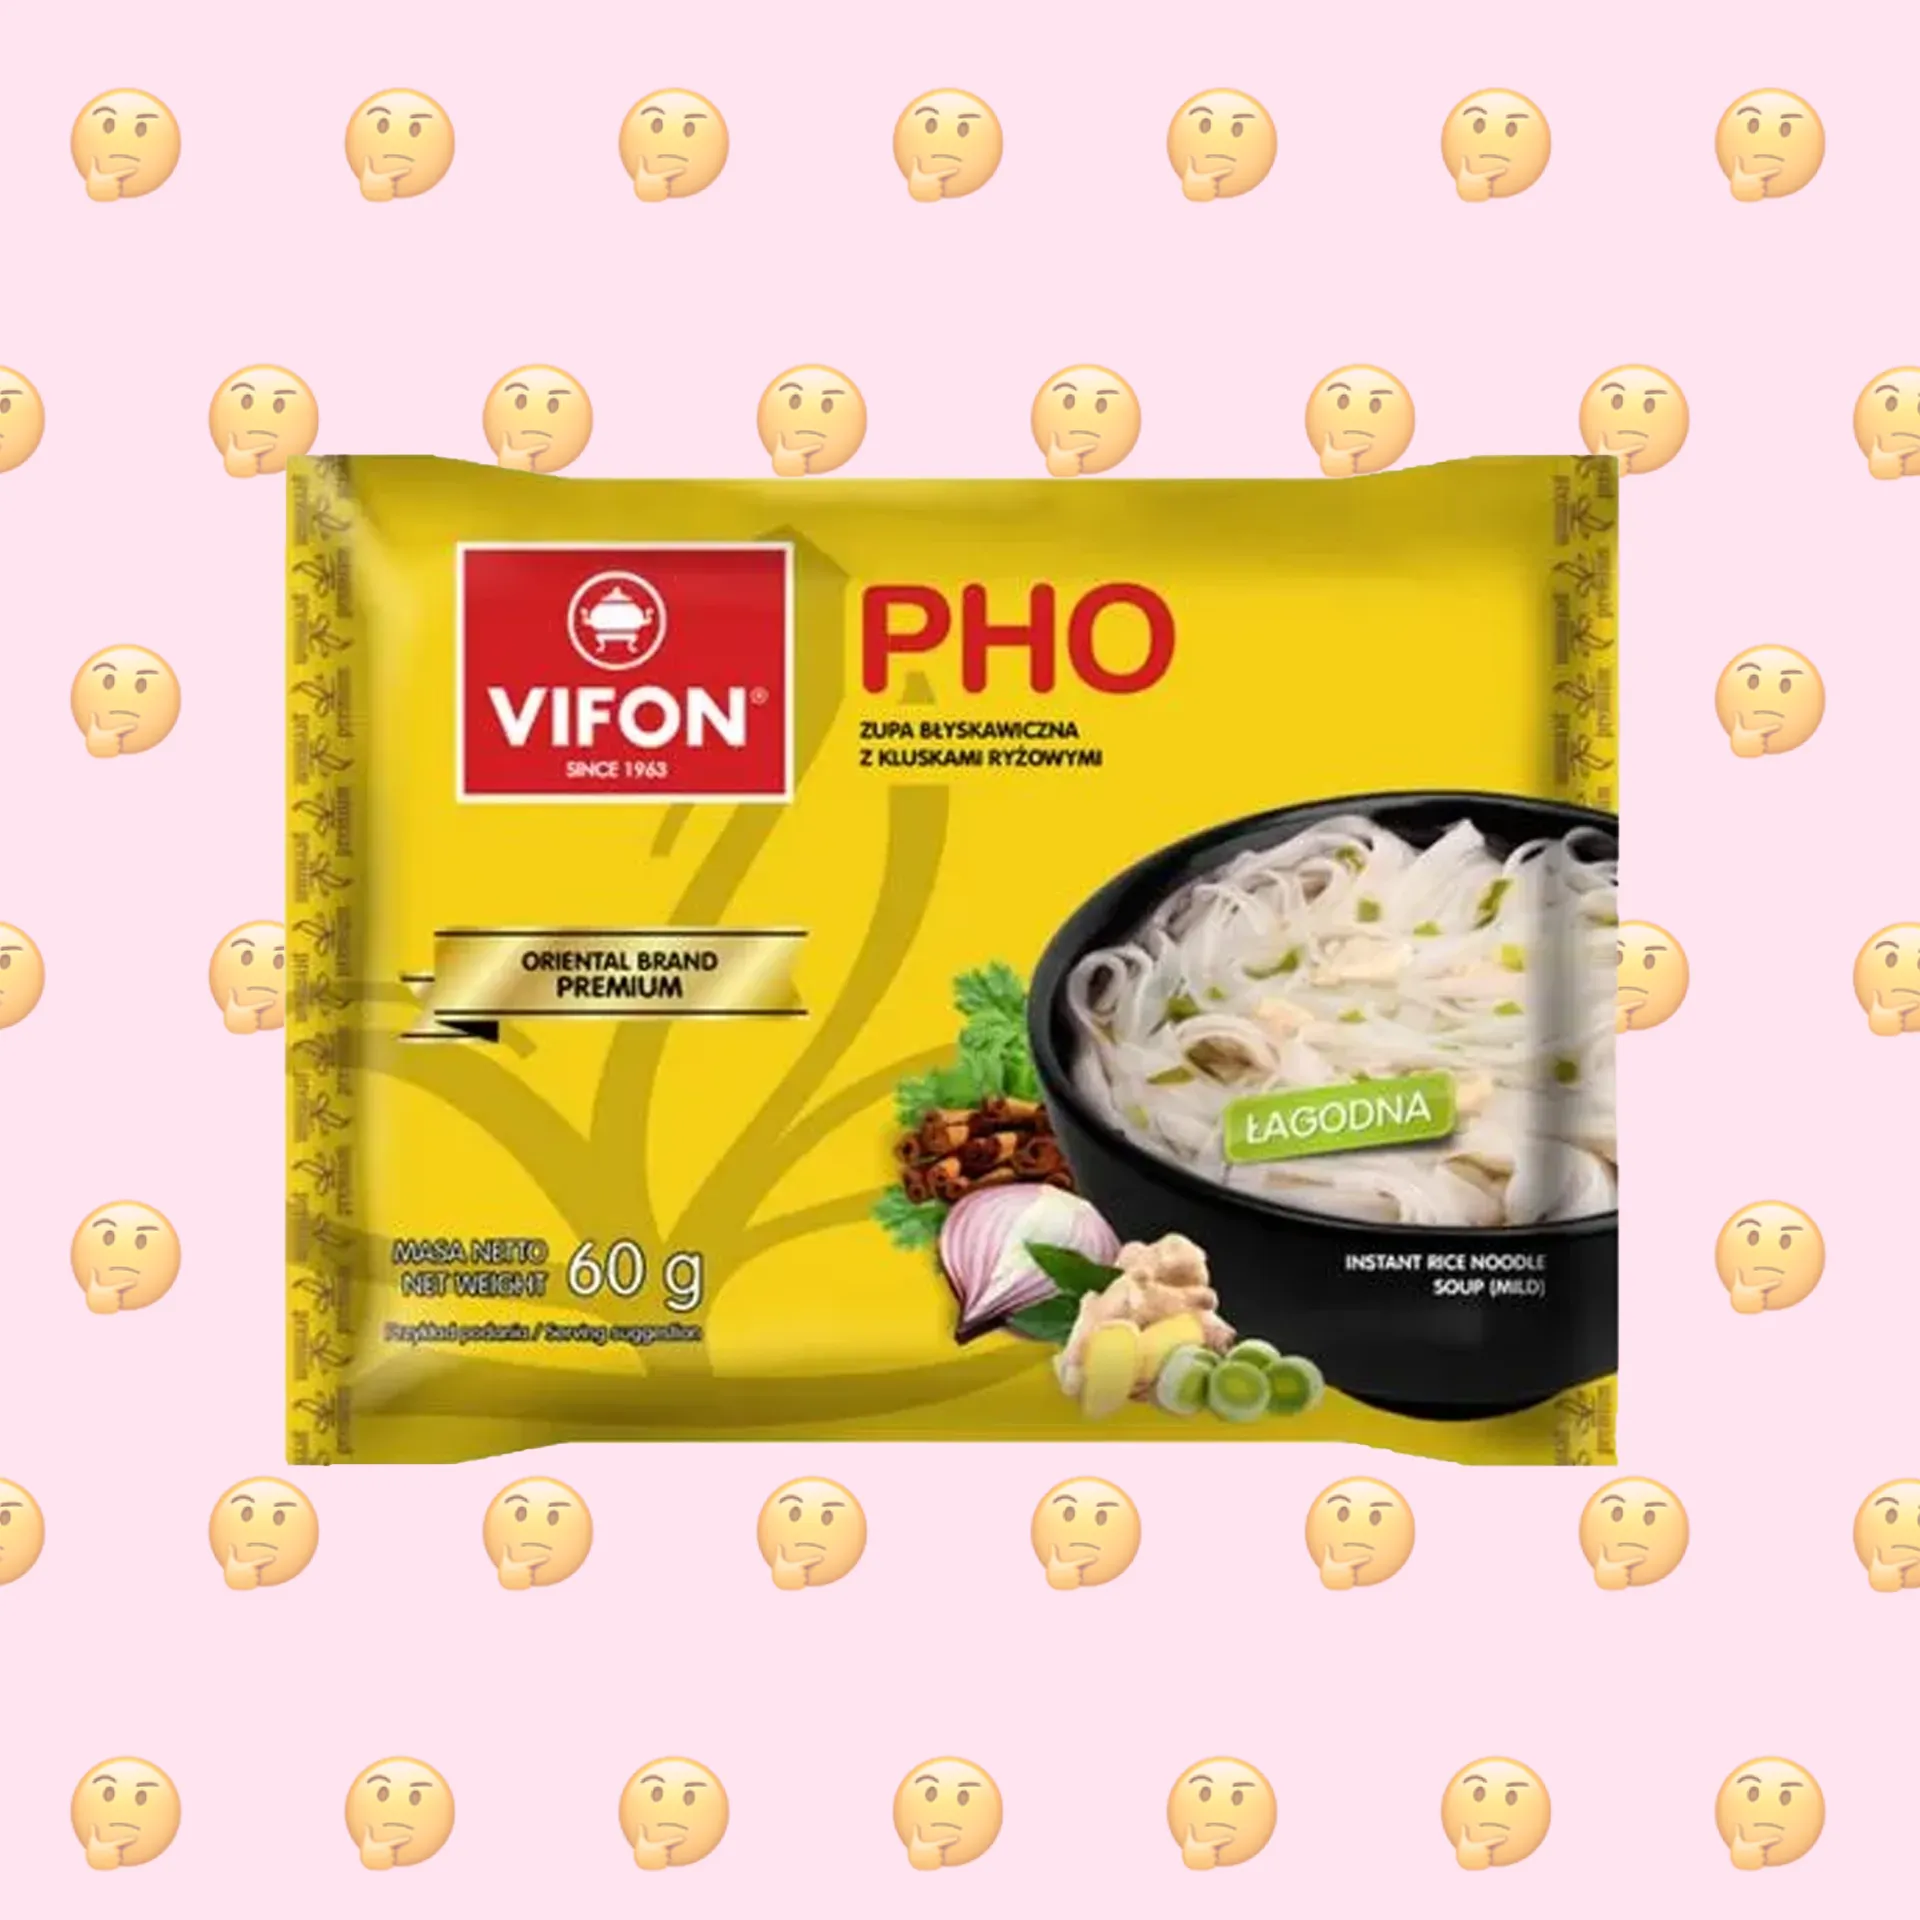 Веганская ли лапша быстрого приготовления рисовая Pho VIFON?